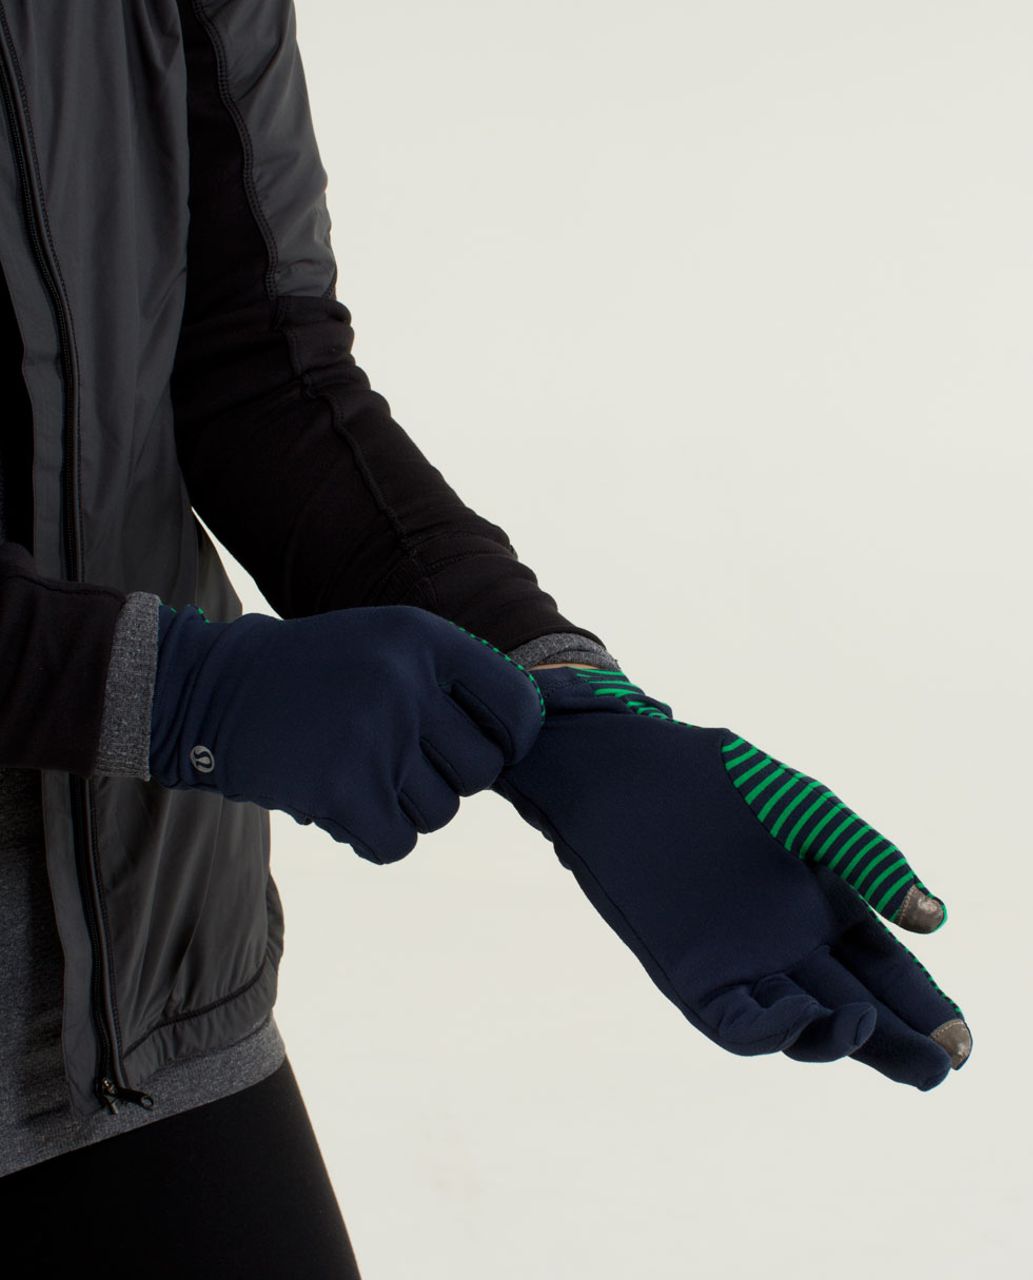 Lululemon Run With Me Gloves - Hyper Stripe Green Bean / Inkwell